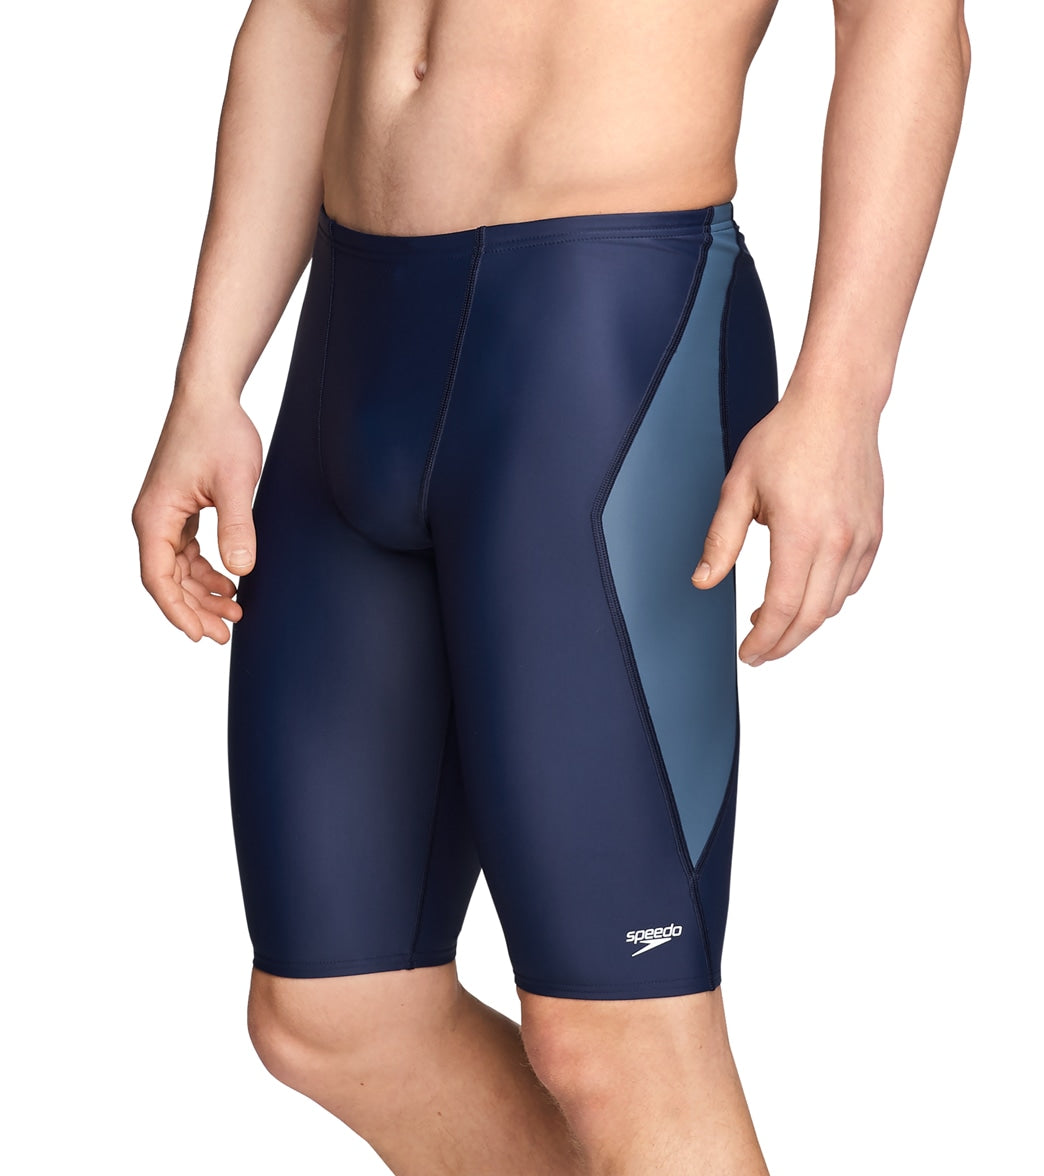 Speedo Men's Powerflex Eco Tone Setter Jammer Swimsuit - Navy/Grey 24 - Swimoutlet.com